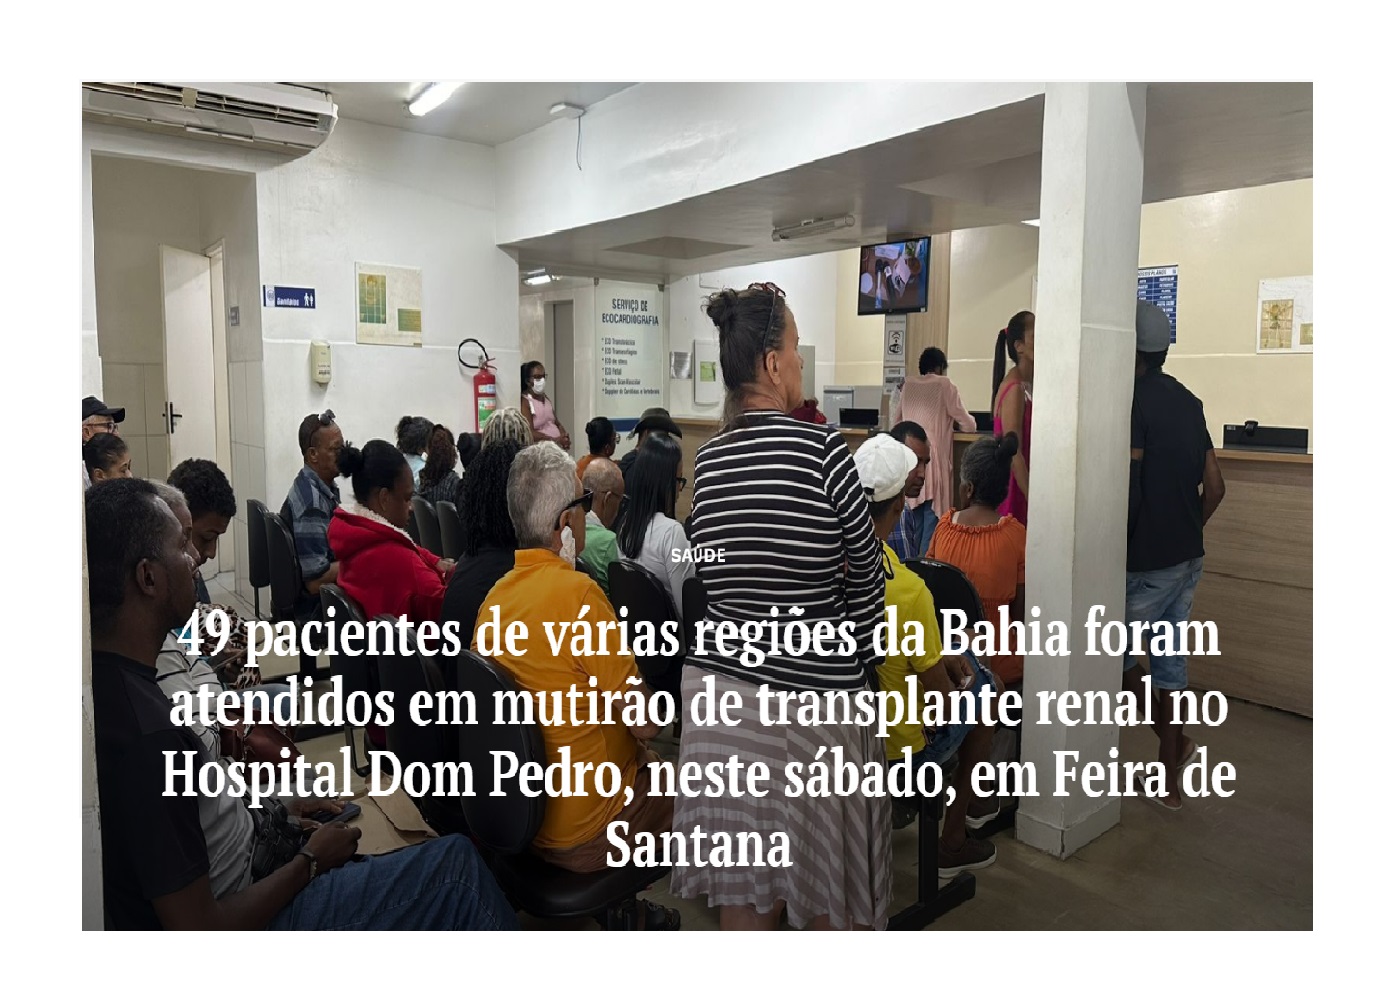 49 pacientes de várias regiões da Bahia foram atendidos em mutirão de transplante renal no Hospital Dom Pedro neste final de semana 